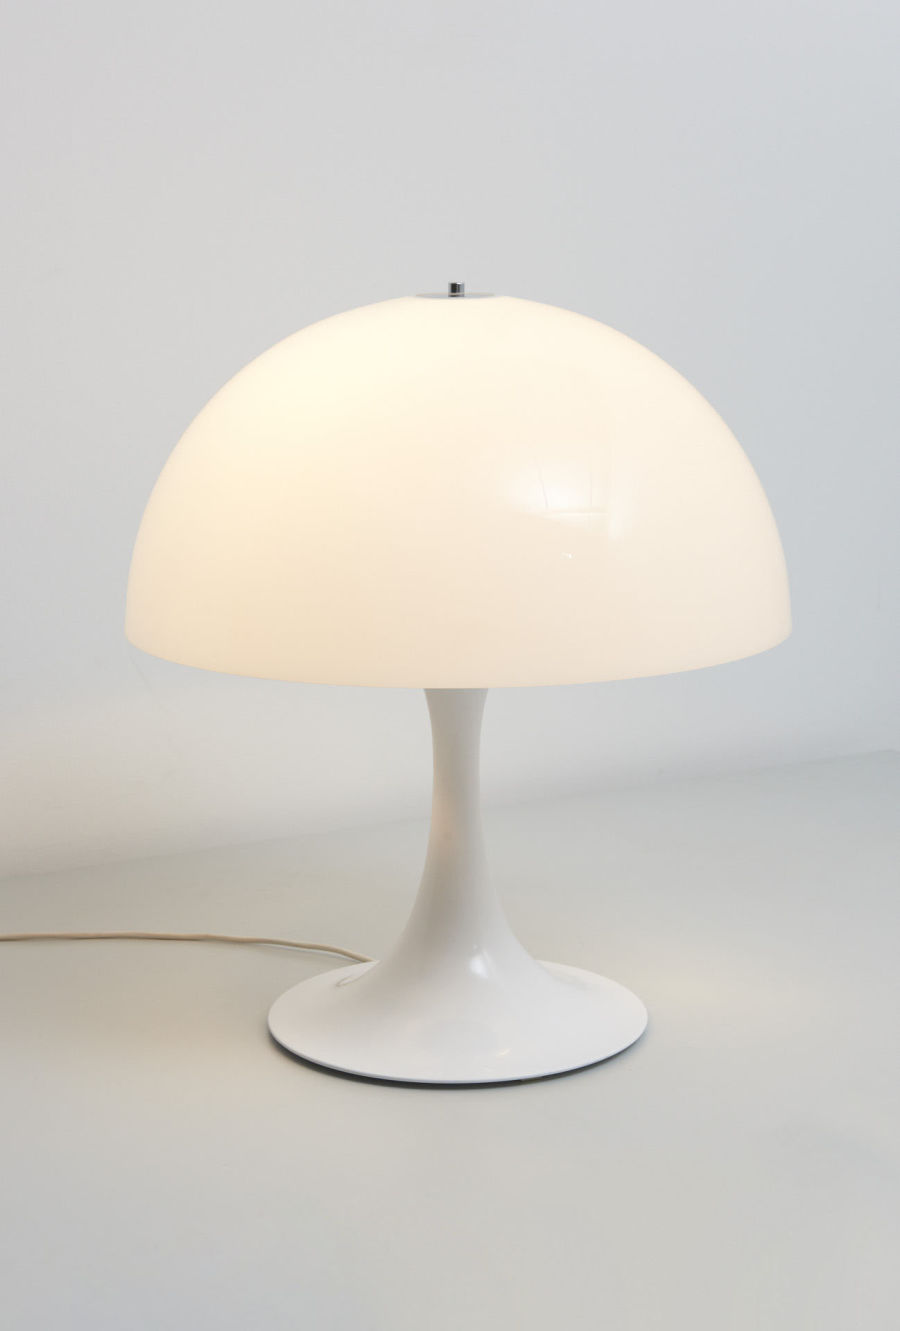 modestfurniture-vintage-2237-raak-table-lamp-tulip-mod-212802